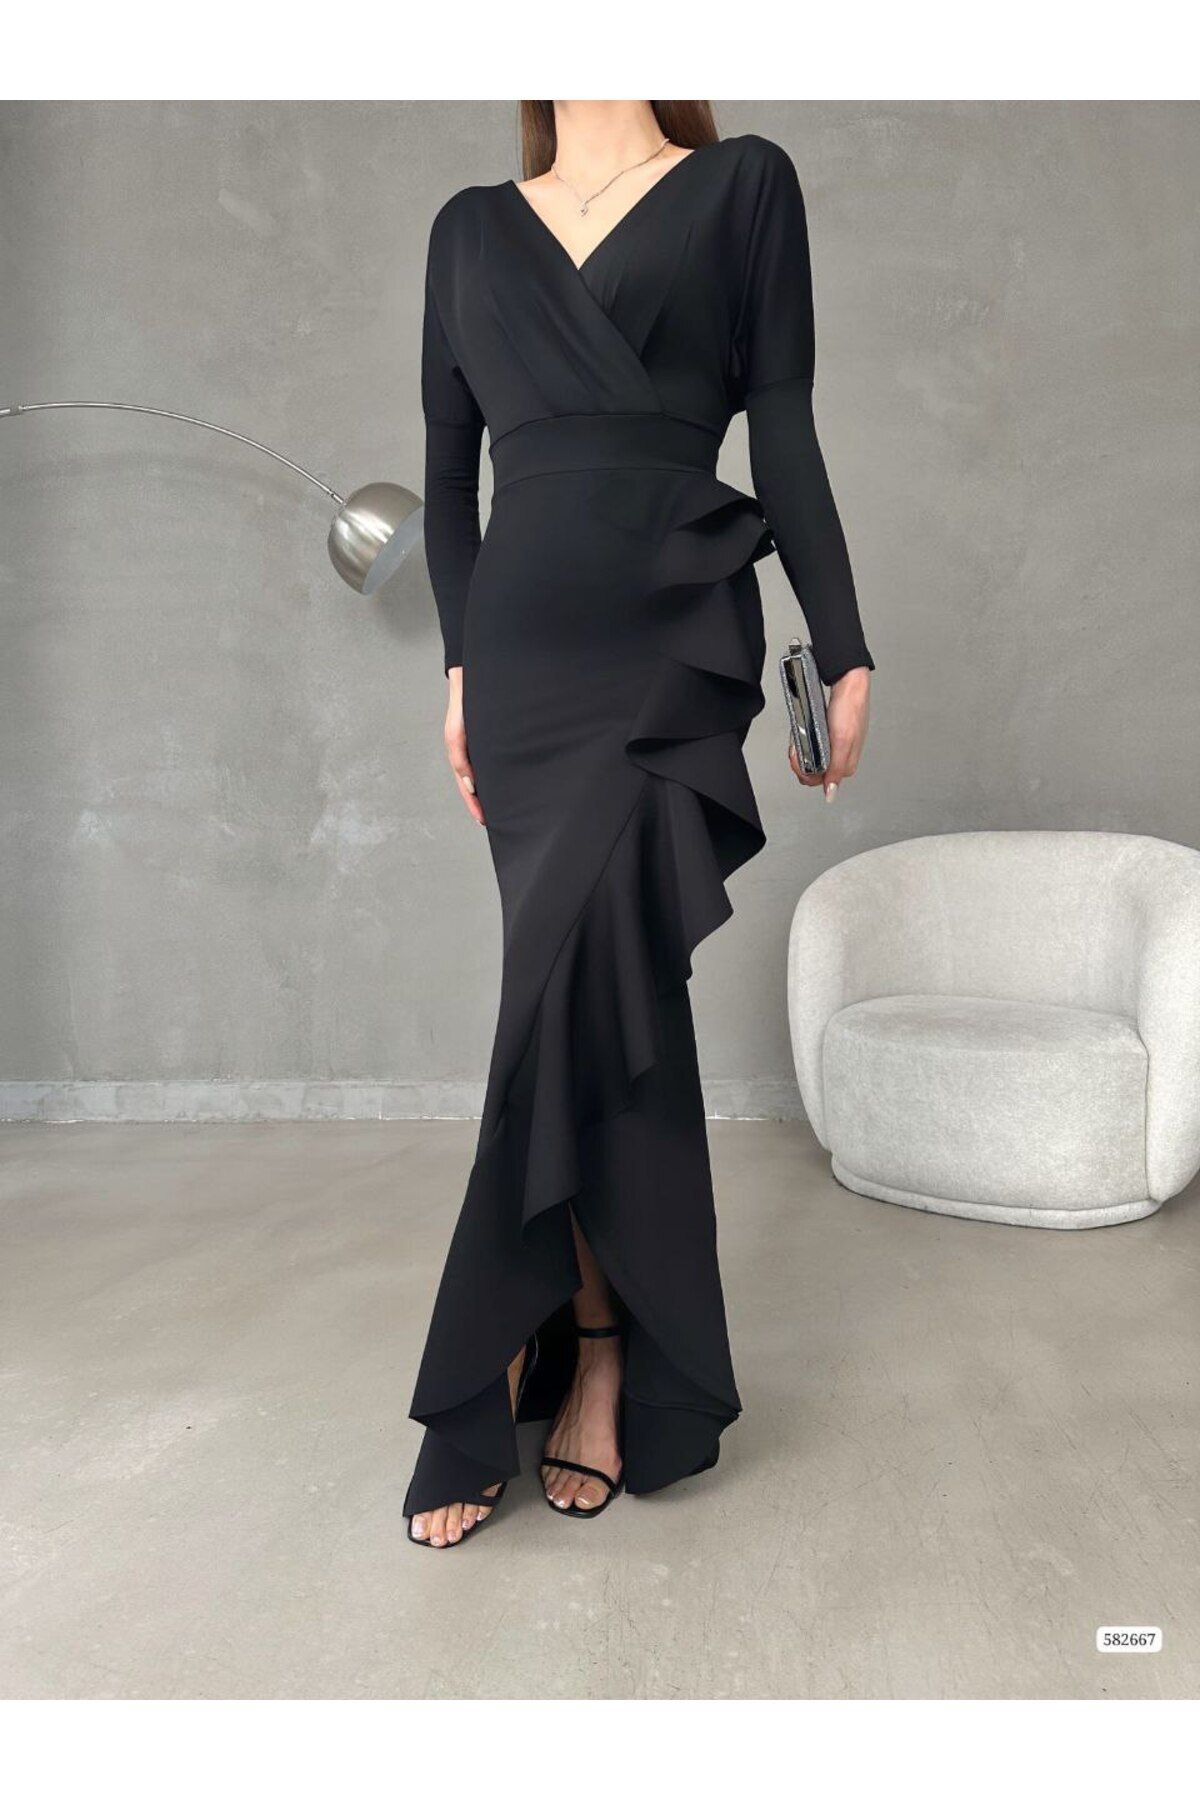 ModaLy Moda Esnek Scuba Kumaş Siyah Renk Volan Detaylı Uzun Kollu Abiye Elbise 739 582667